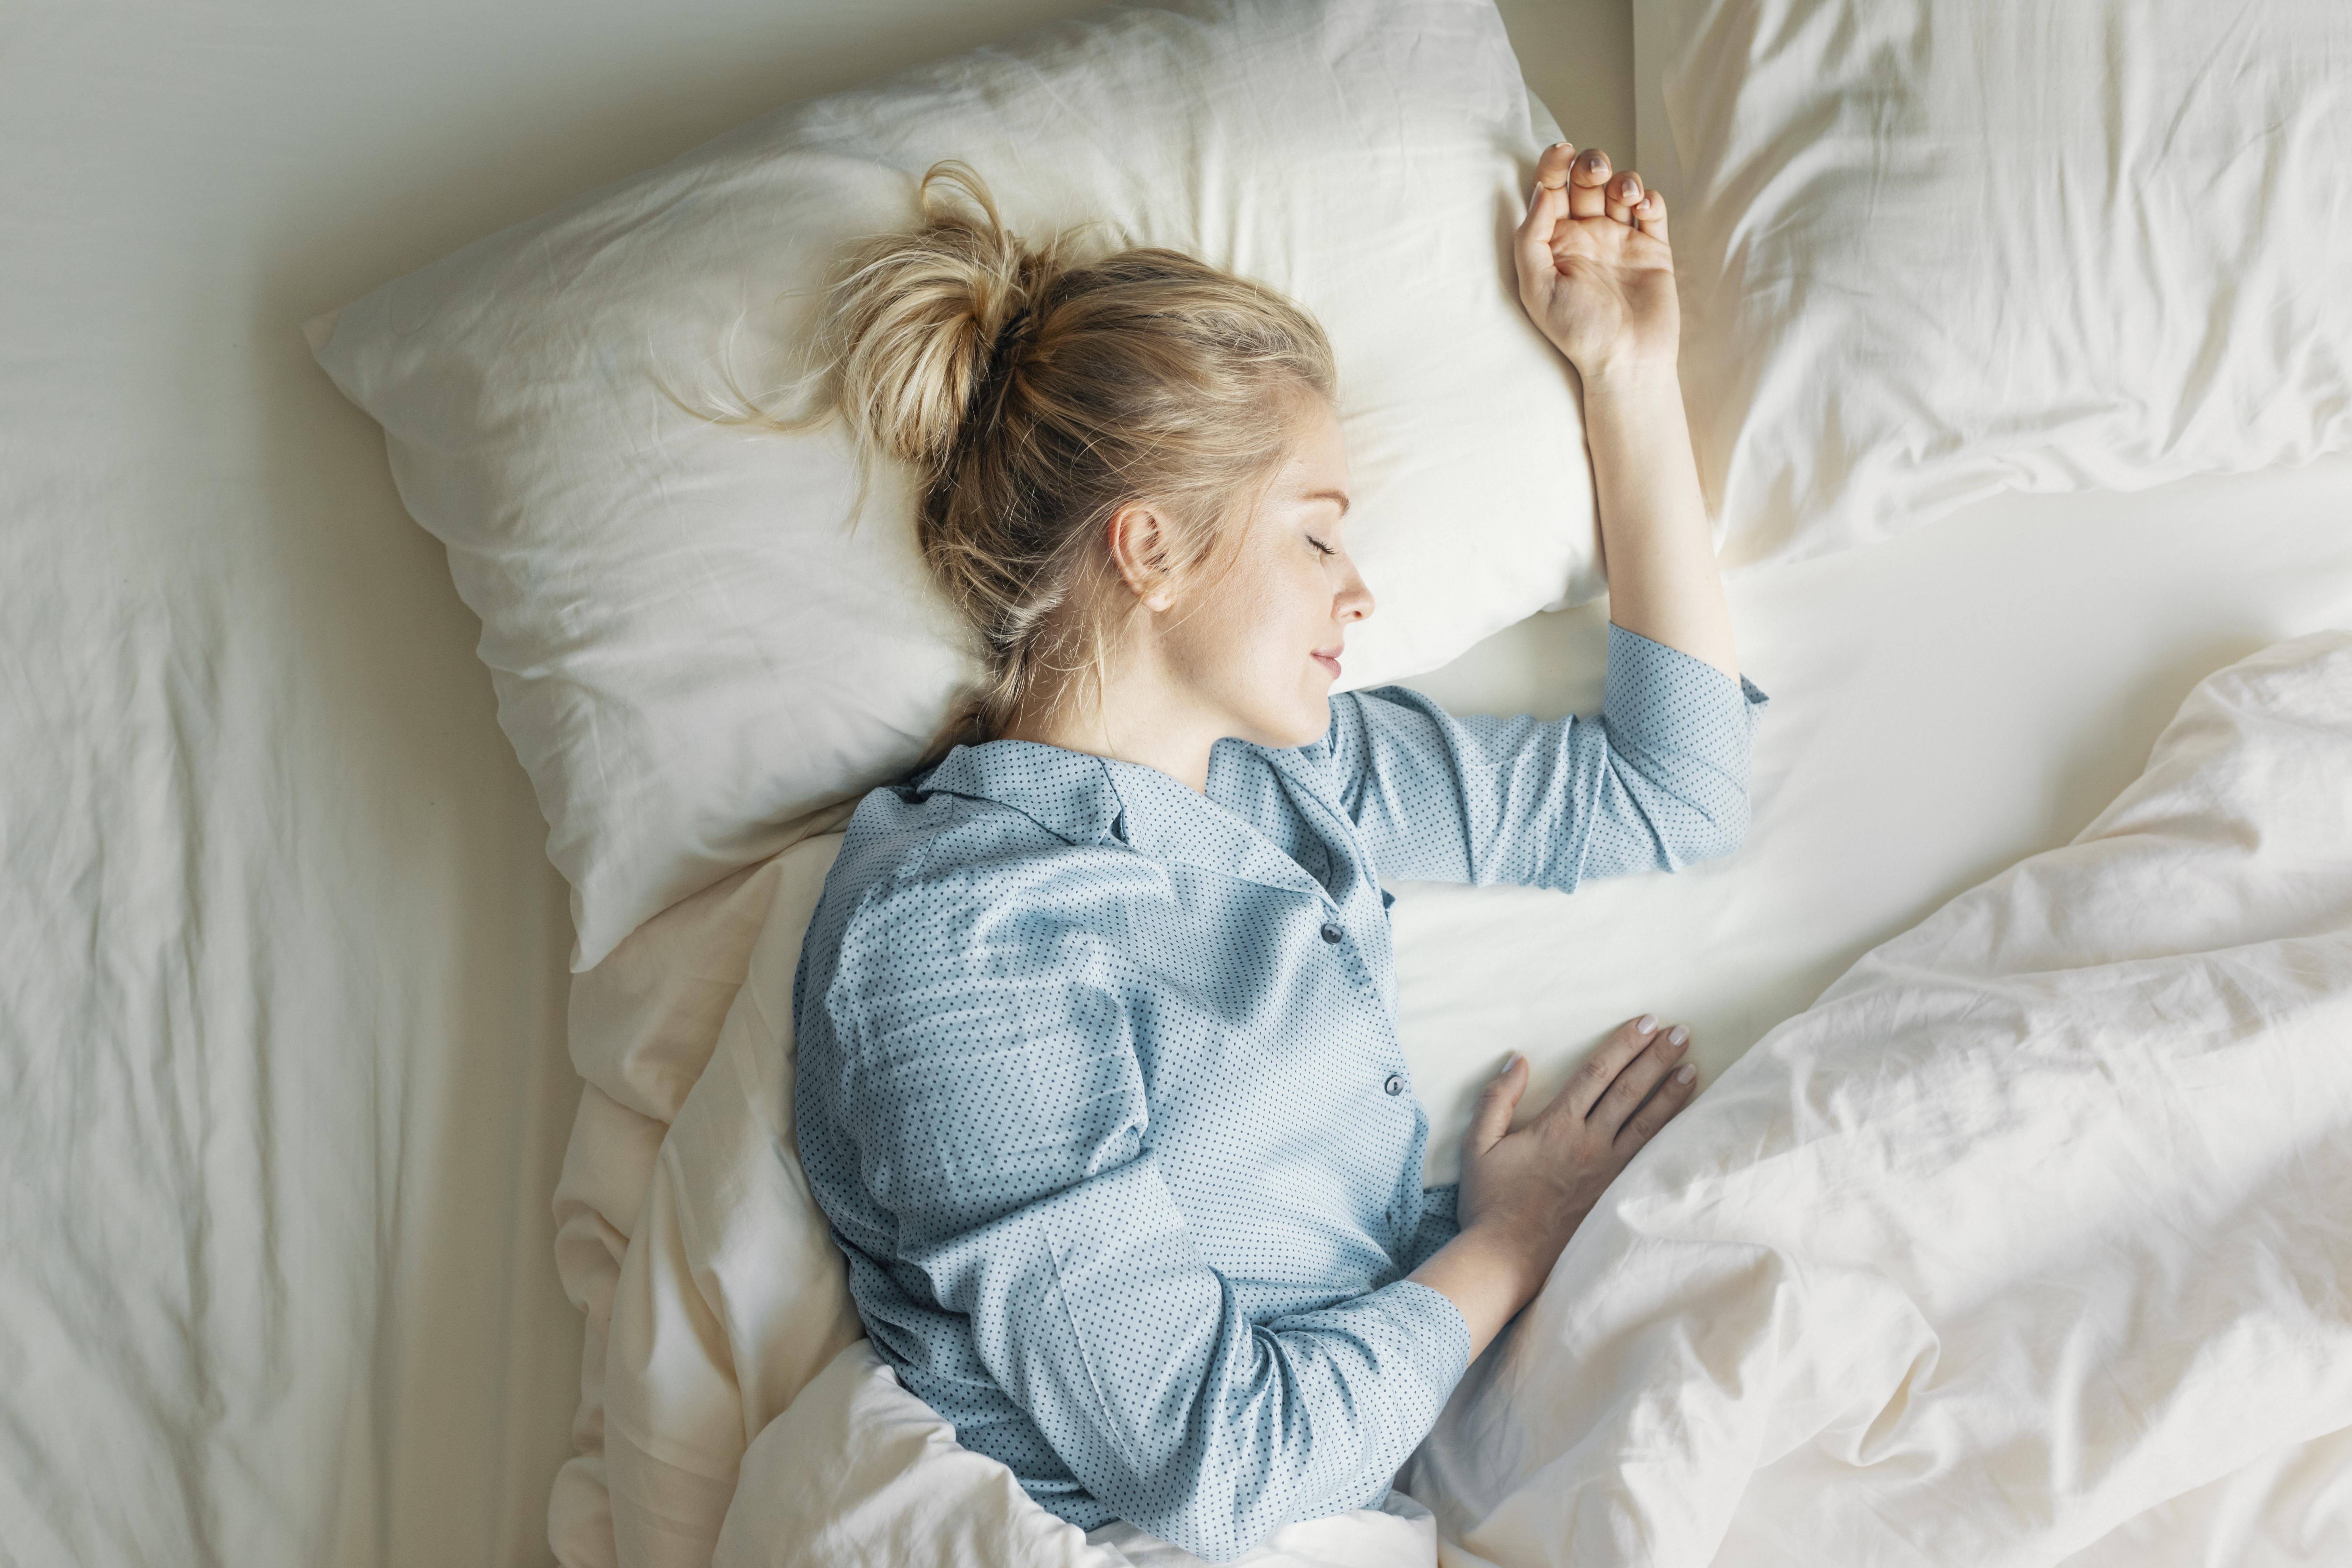  Naukowcy pracują nad metodami, które mogą poprawić jakość snu